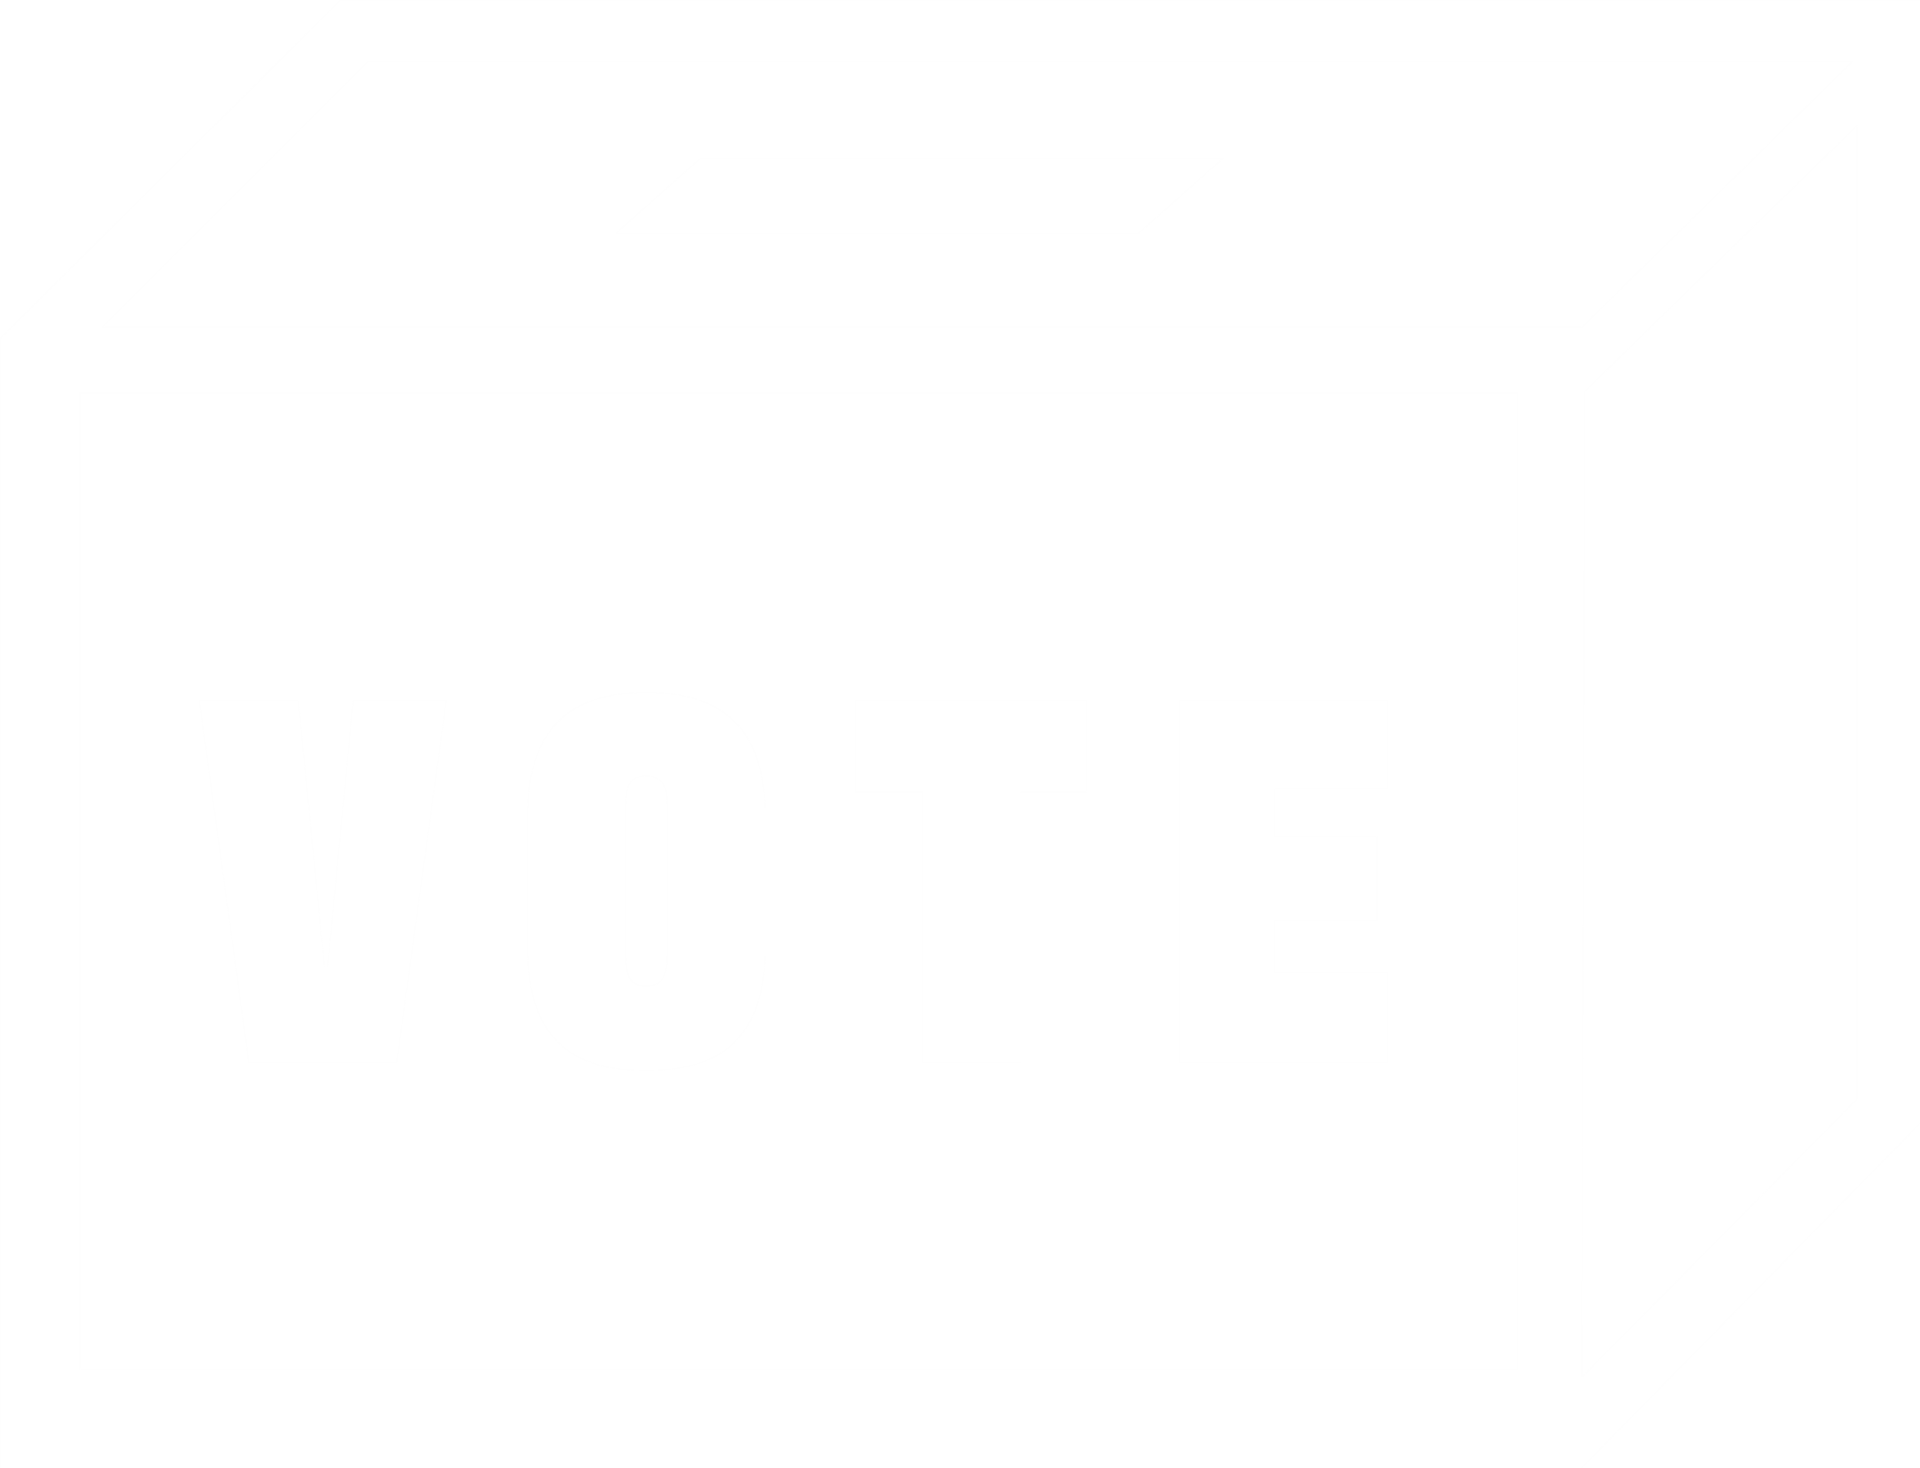 Vote Icon